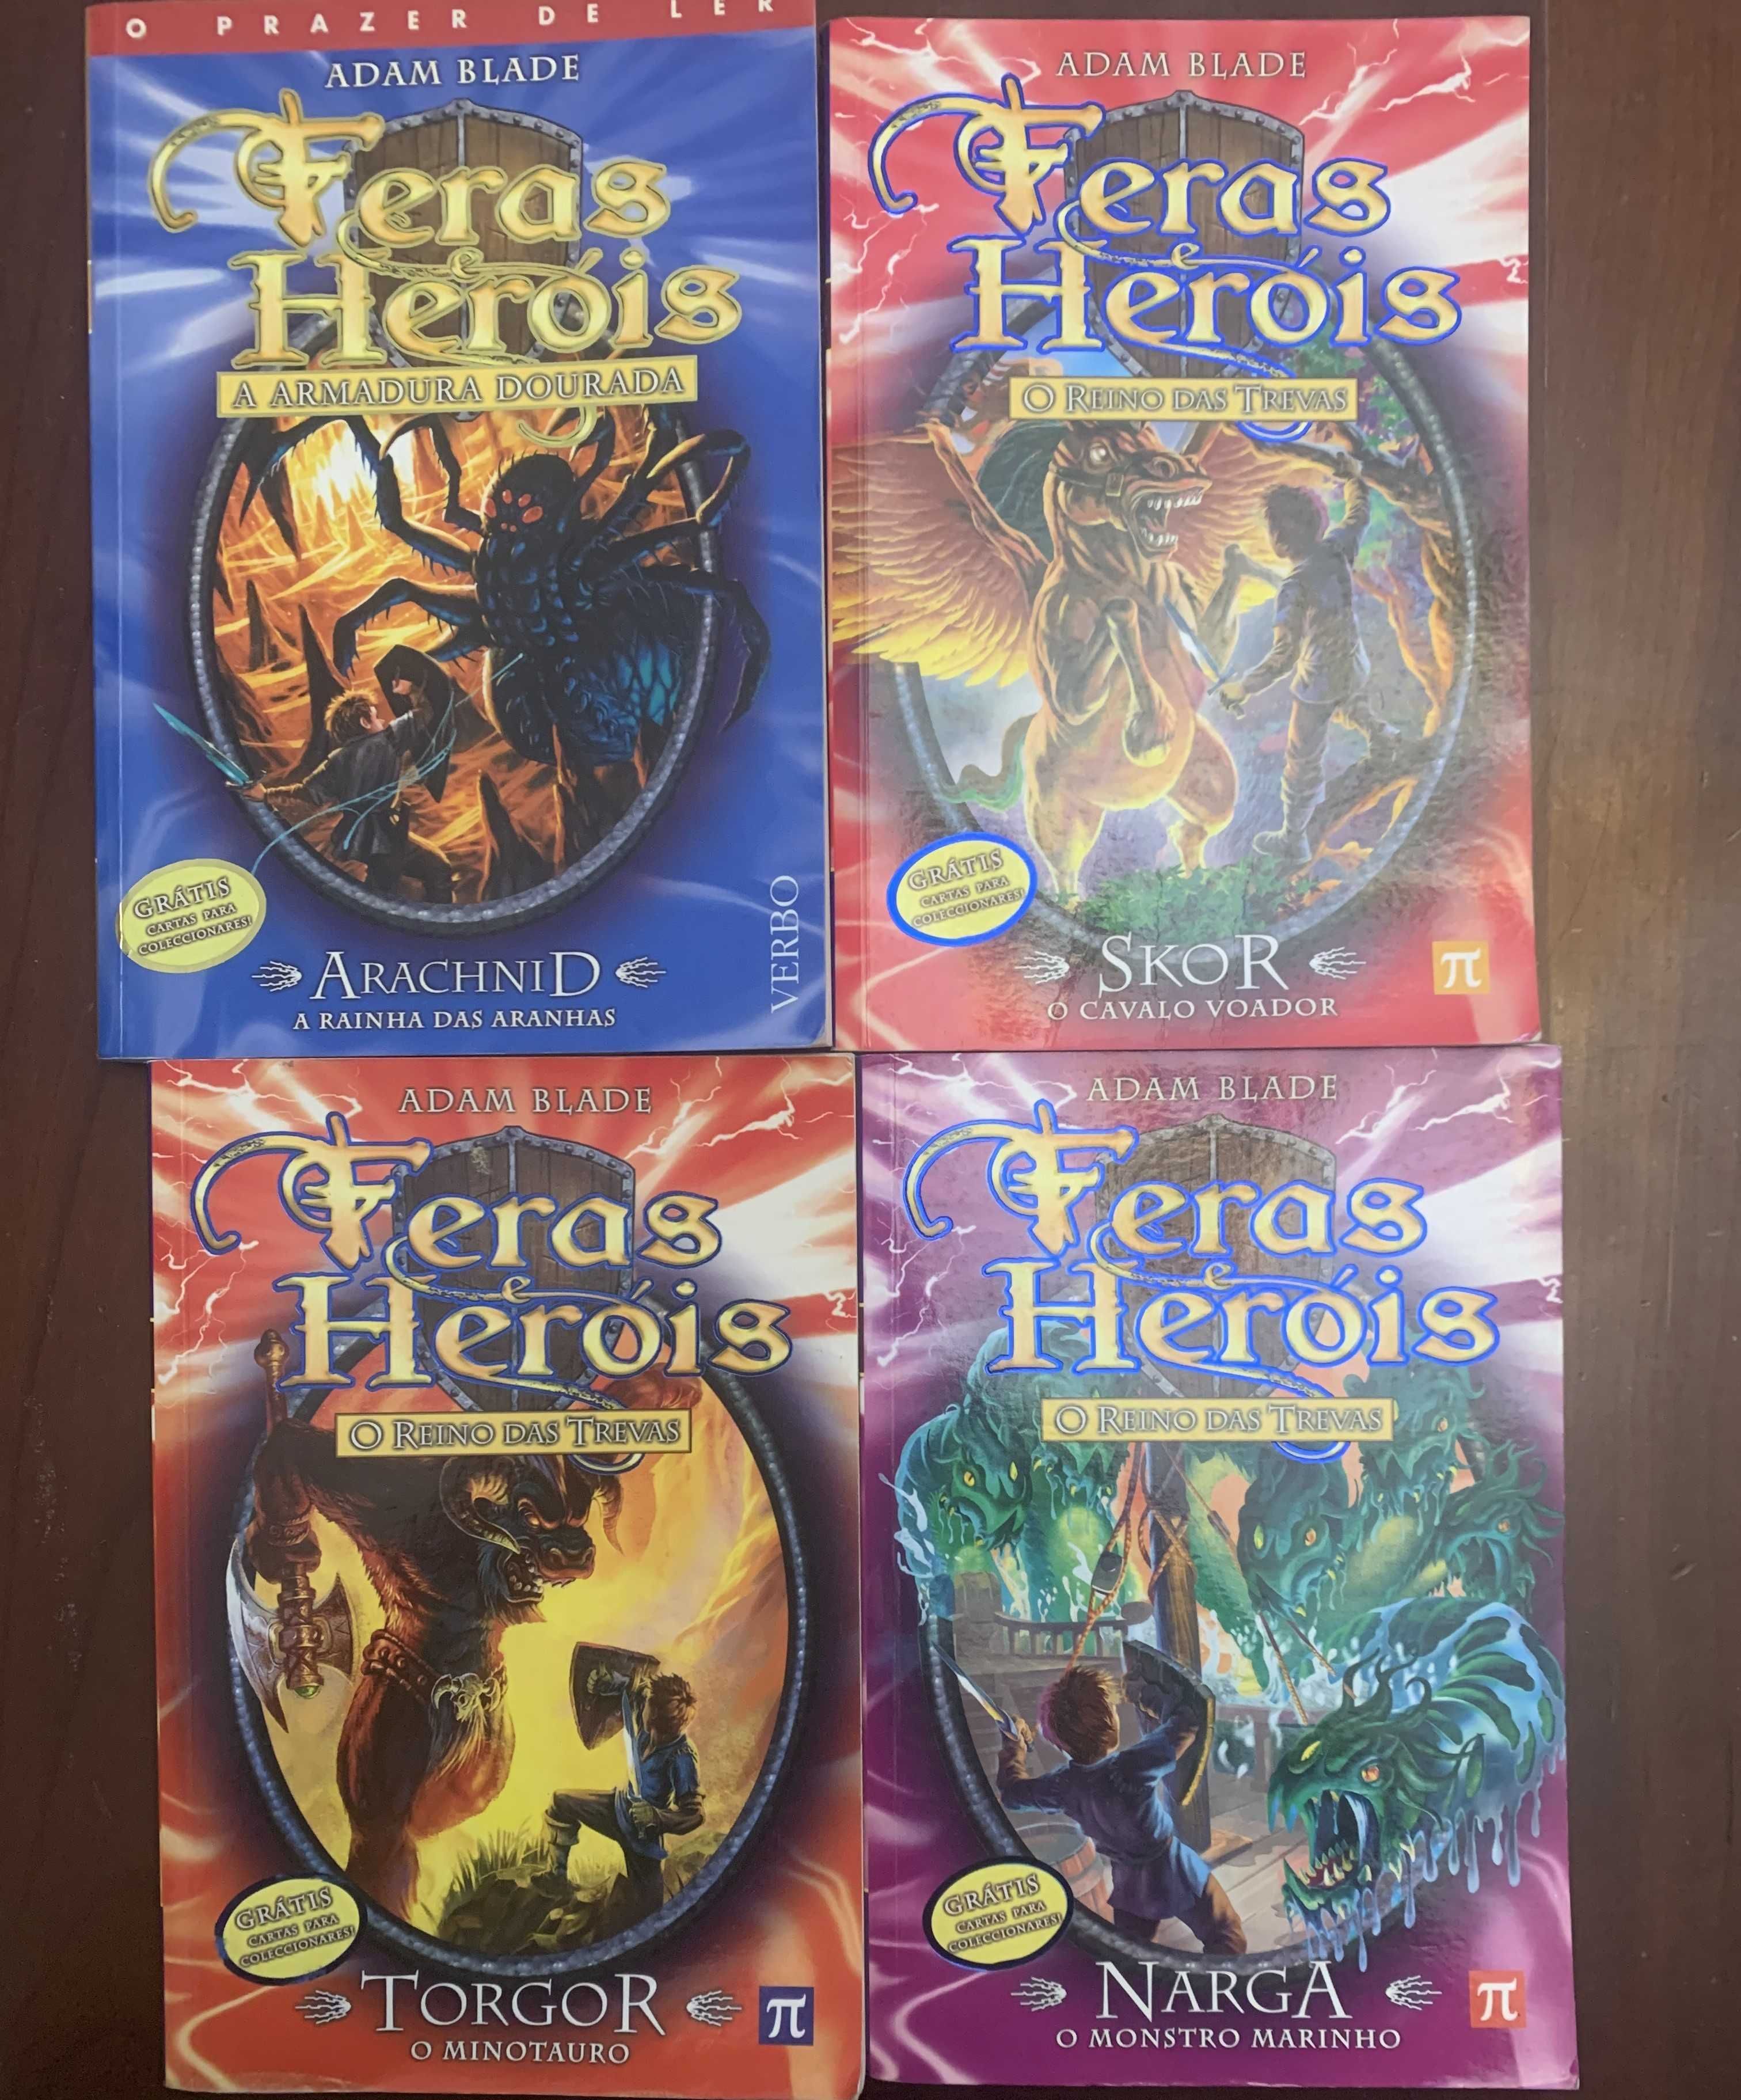 Coleção dos fantásticos livros "Feras e Heróis" de Adam Blade.